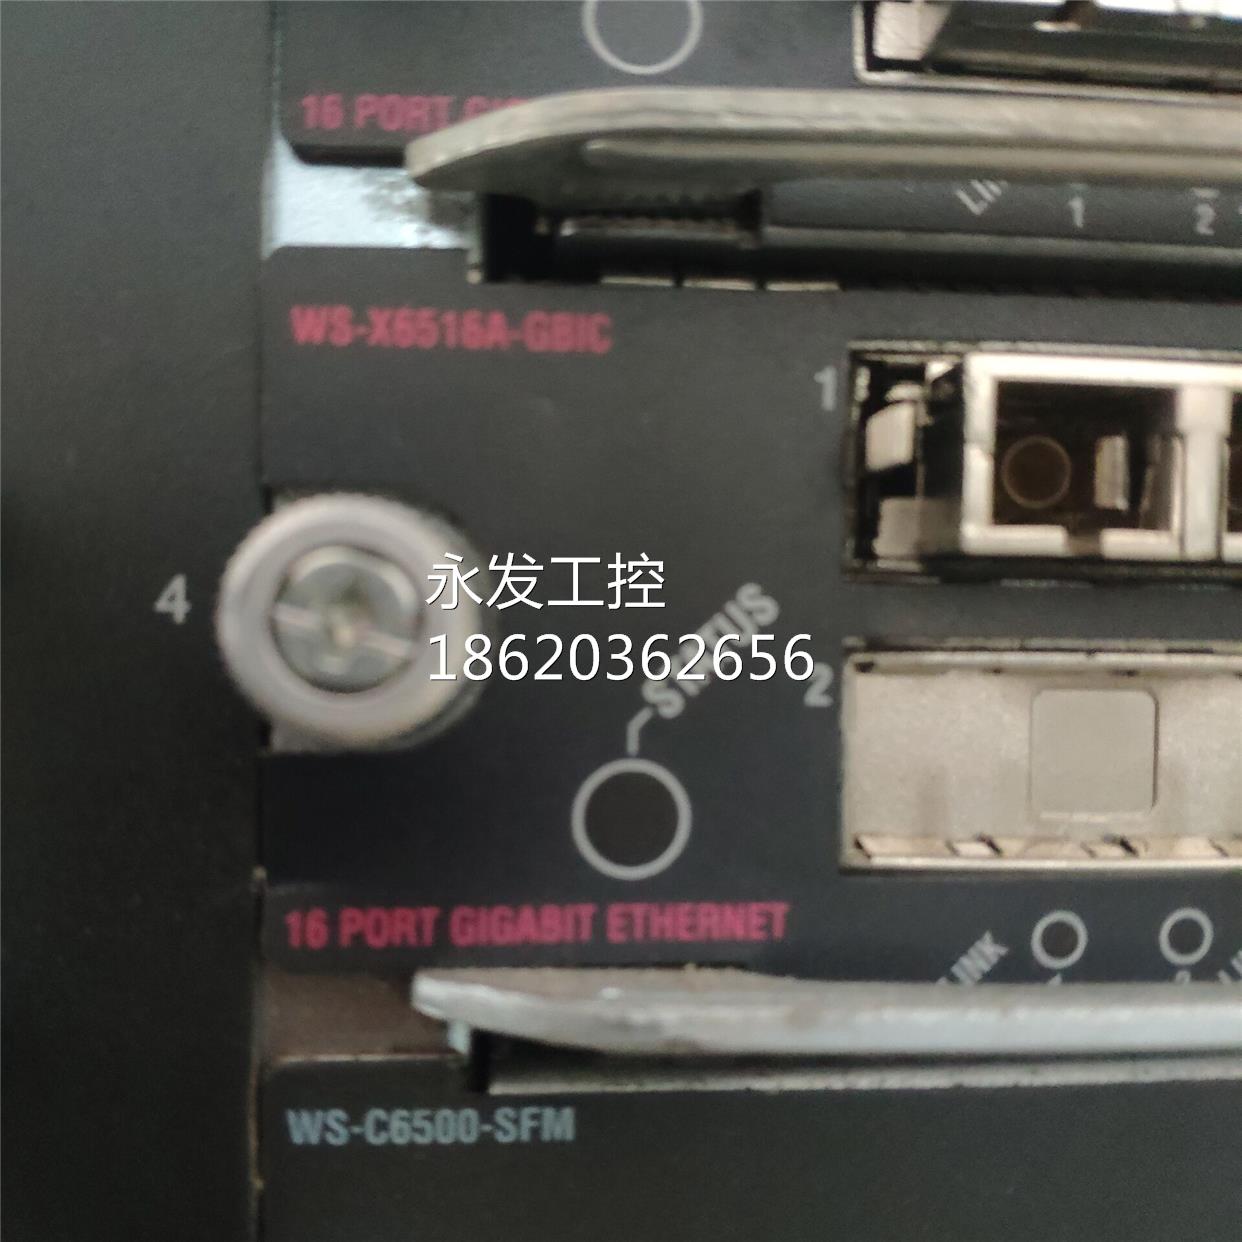 #思科 WS-X65166516A-GBIC 16口千兆交换机业务卡 原装拆机询价